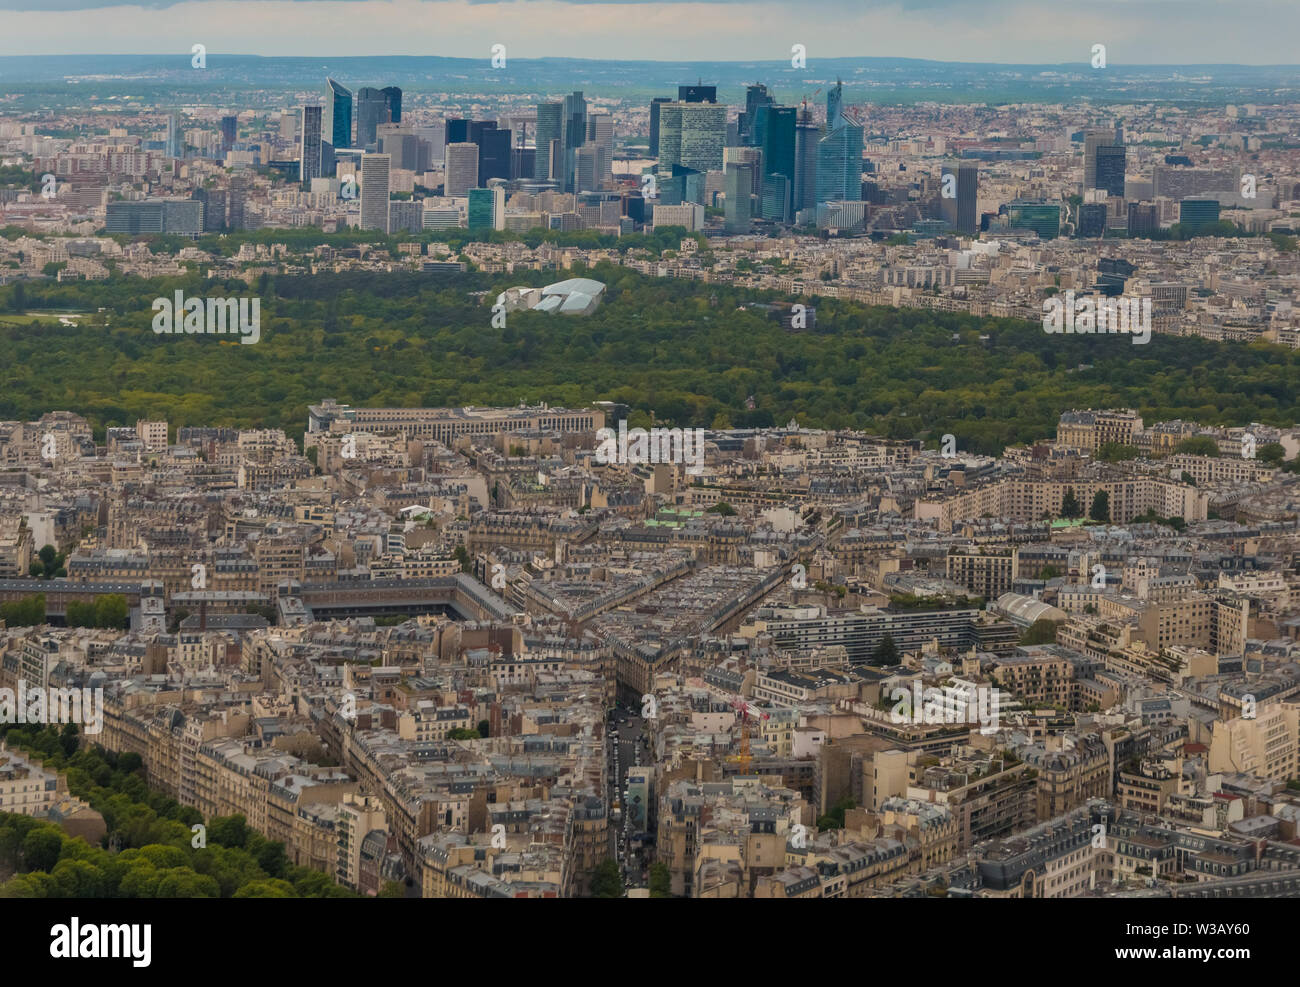 Antenna unica cityscape panorama del bordo occidentale del XVI arrondissement di Parigi. Il Bois de Boulogne, un grande parco pubblico e lo skyline di L Foto Stock